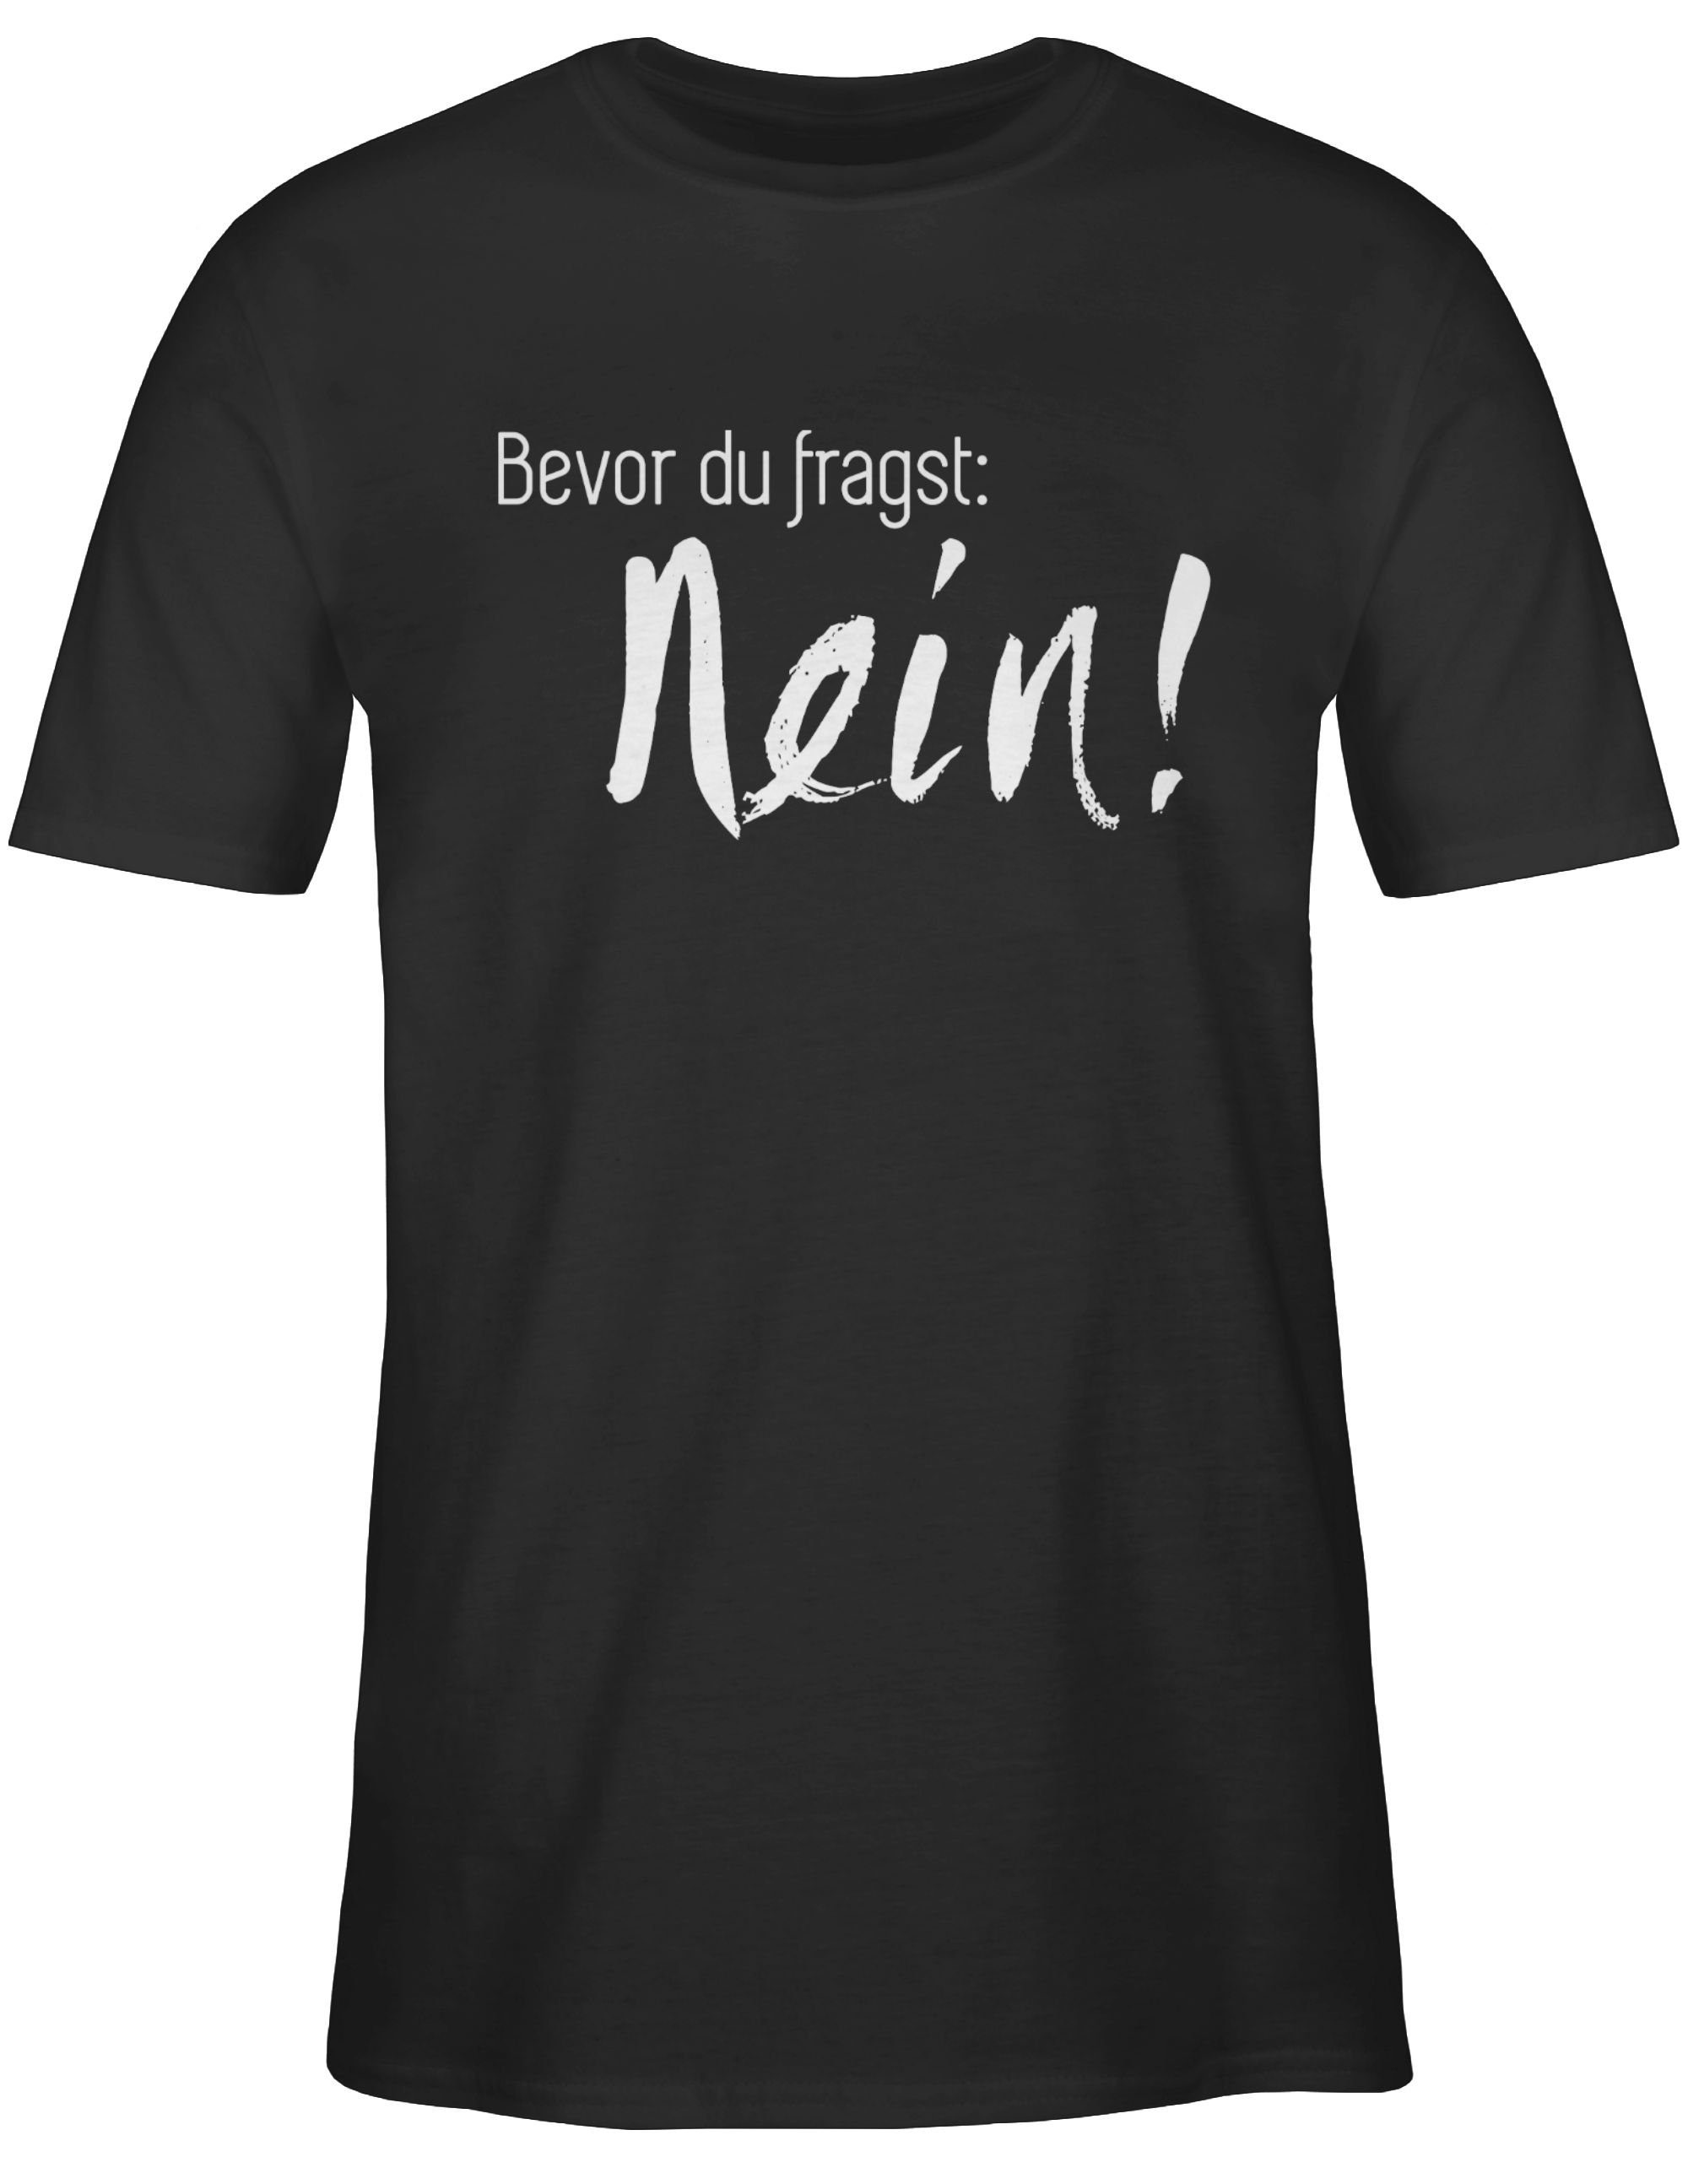 Shirtracer T-Shirt Bevor Statement Sprüche du Schwarz 01 Nein fragst